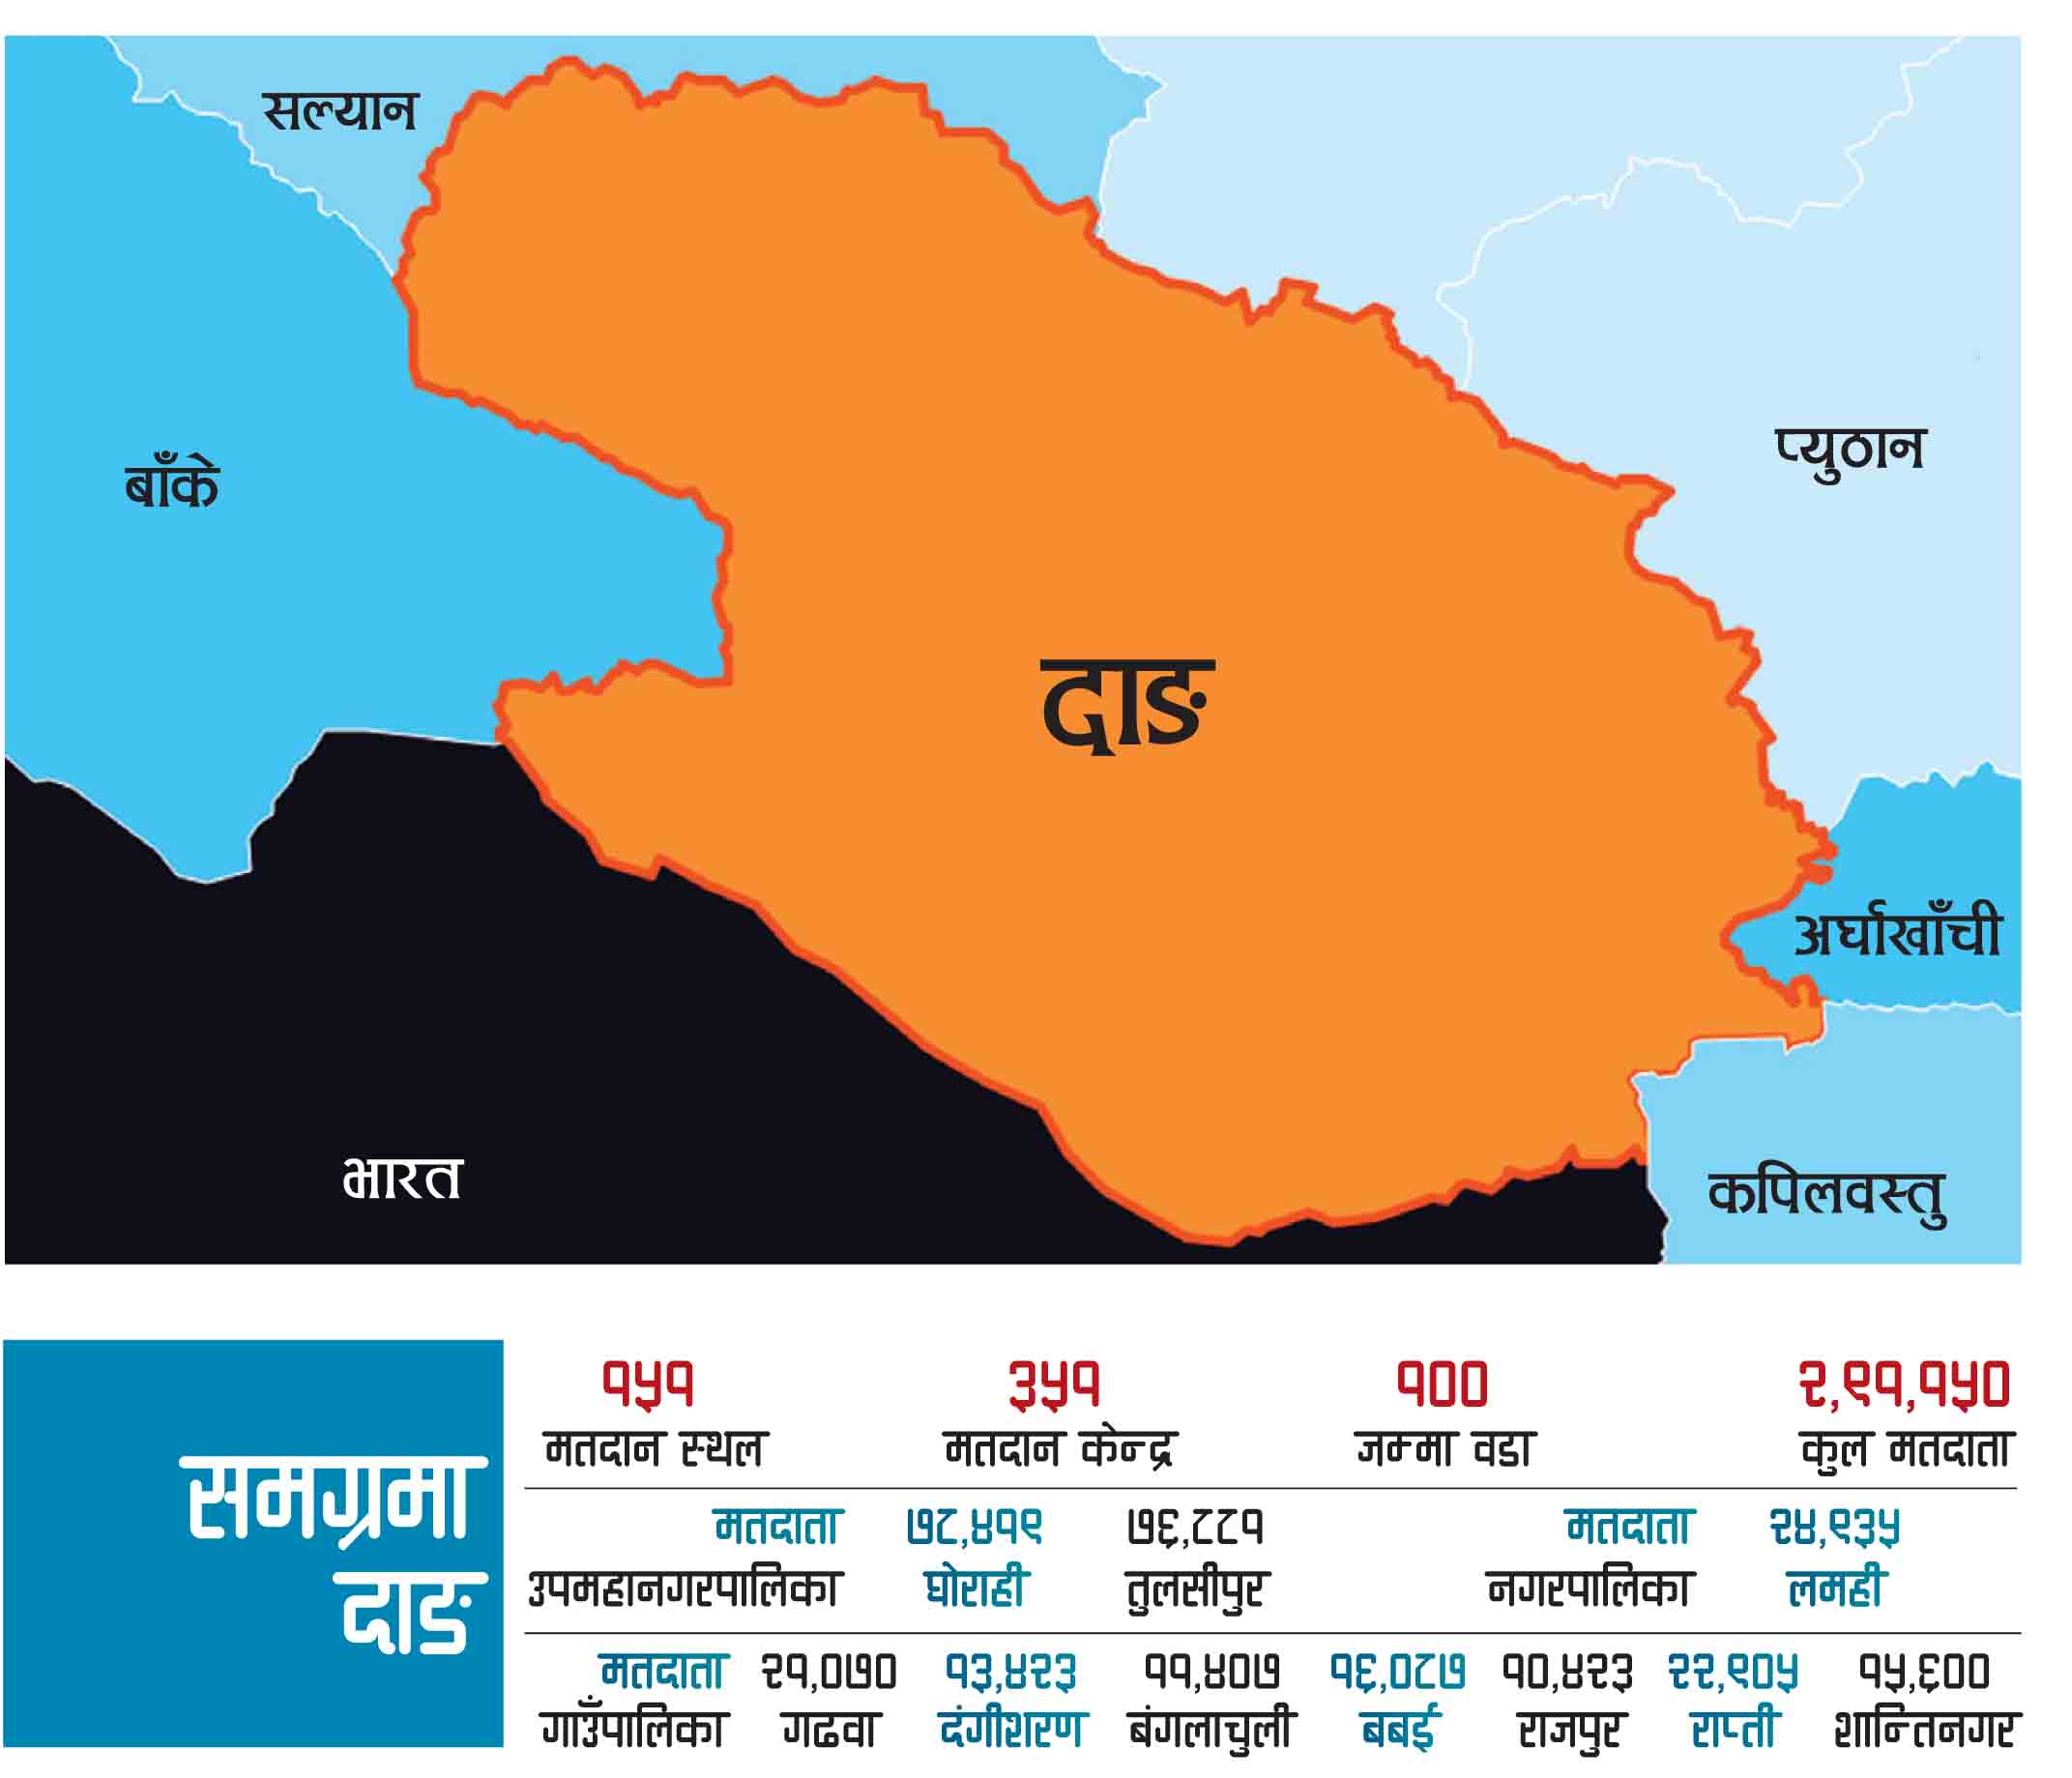 दाङमा जिल्लामा ४३ मतदान केन्द्र थपेर ३ सय ९४ मतदान केन्द्र कायम